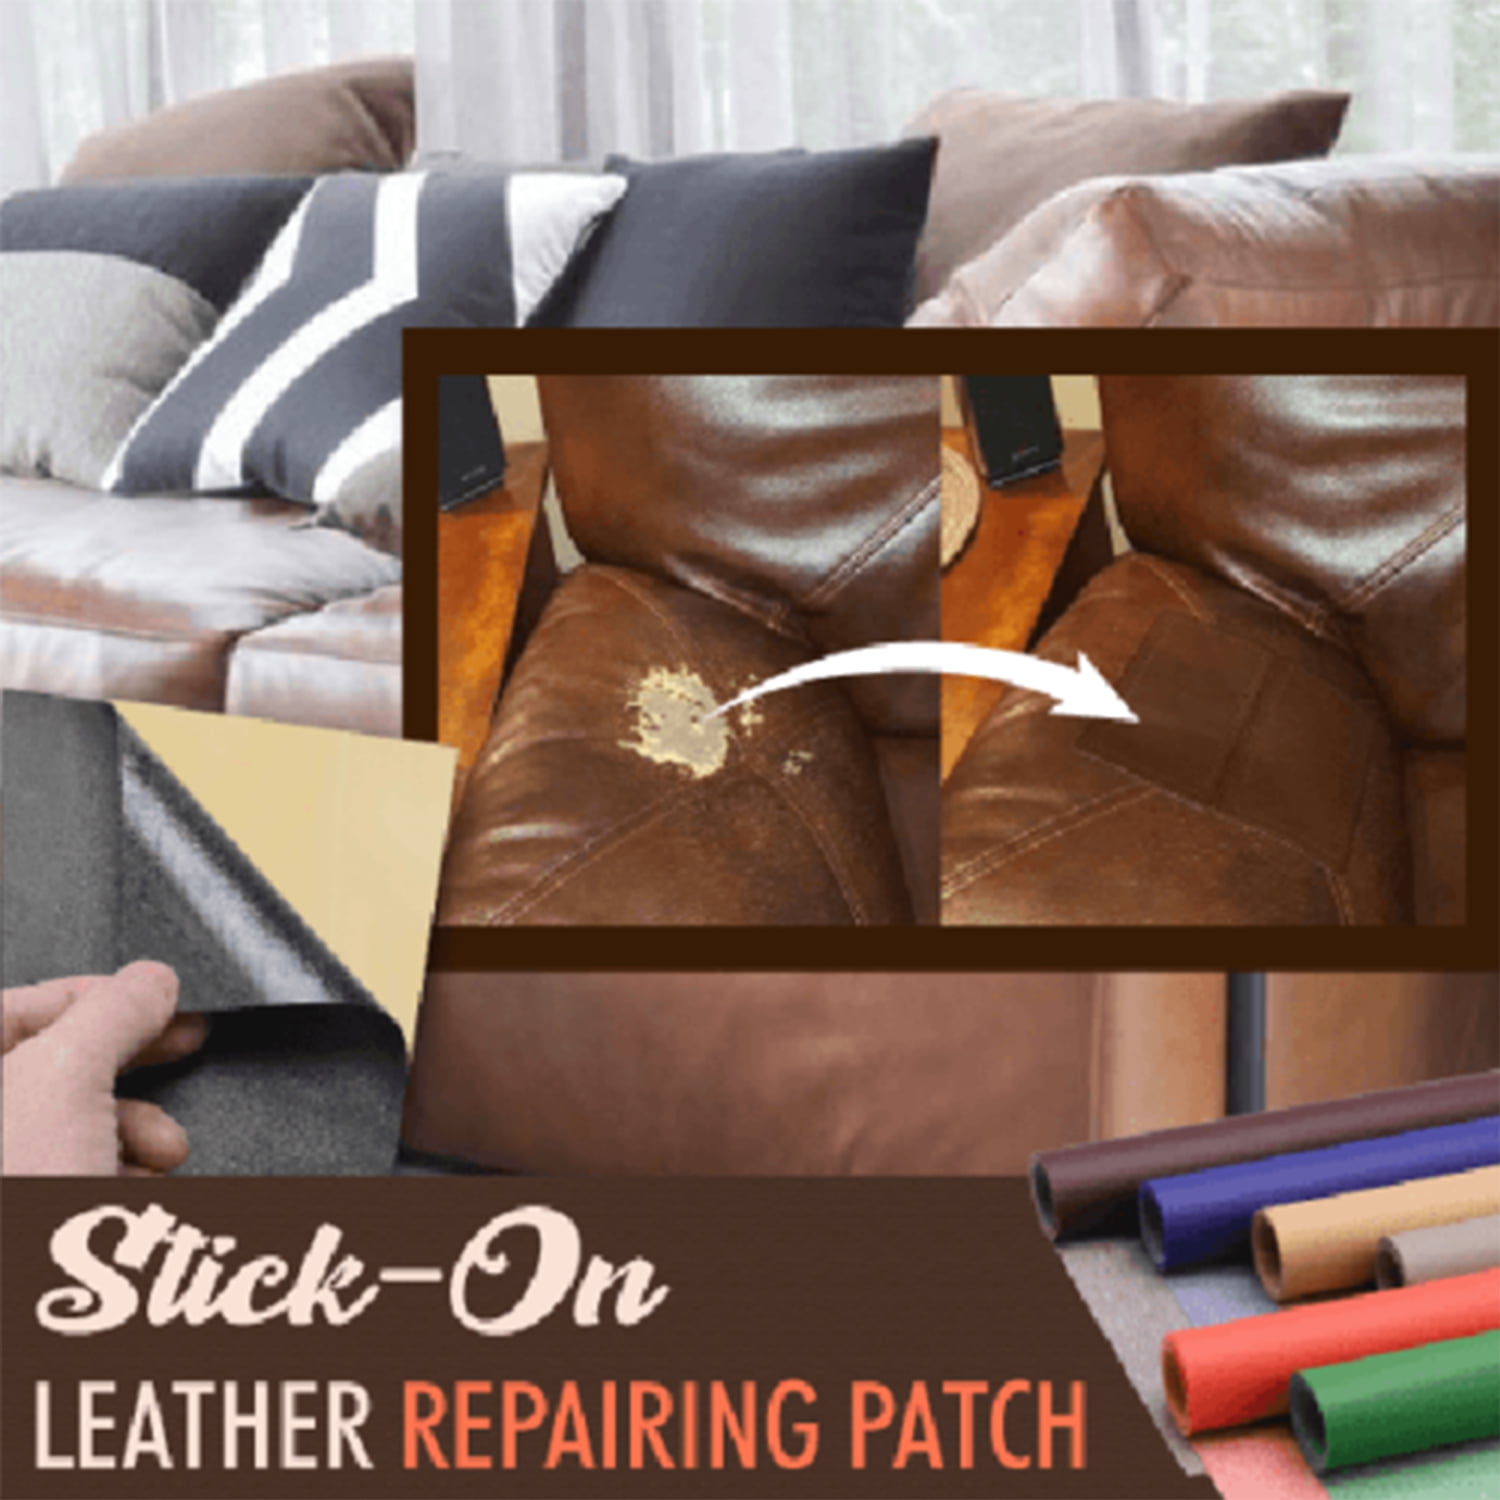 Lilvigor Leather Repair Patch self Adhesive, Leather Repair kit Vinyl  Leather Patches for Couch, Furniture, car seat, Sofa, Shoe, Wall (Black